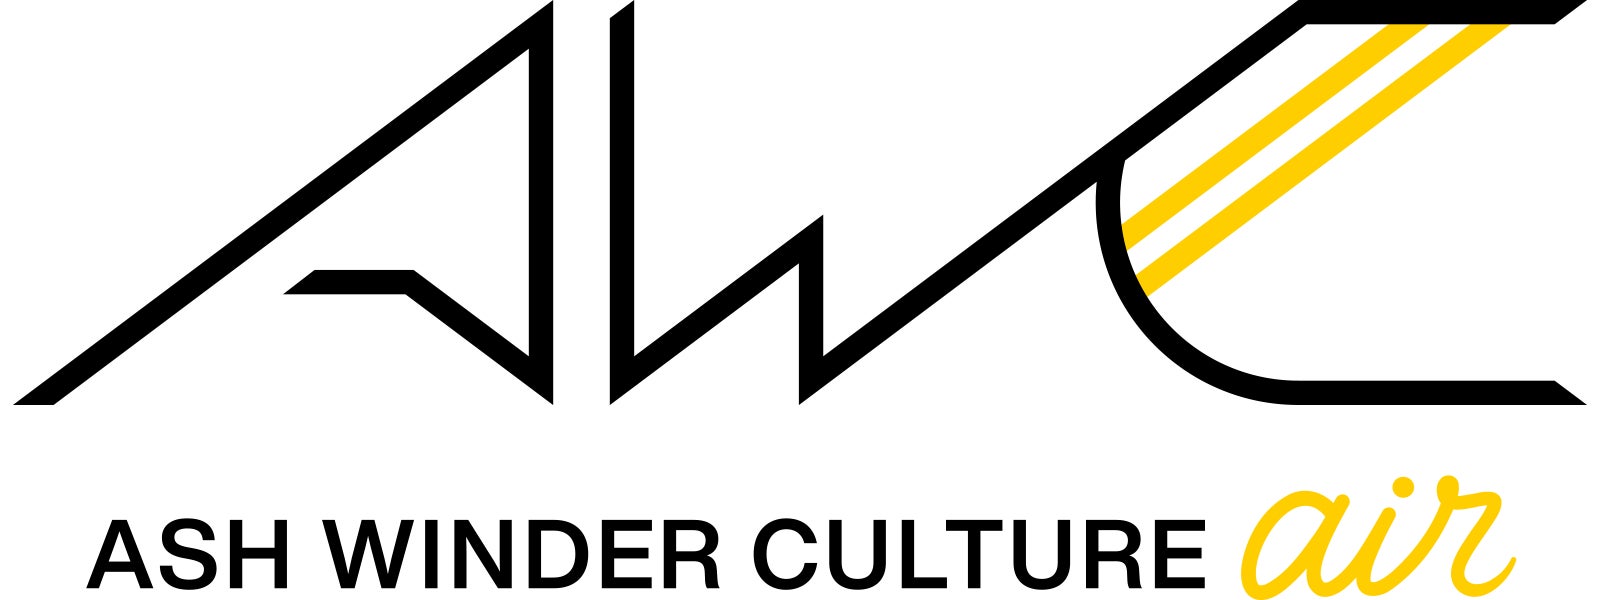 株式会社ASH WINDERが「ASH WINDER CULTURE air」を新設、eスポーツタレント「Retloff」「西井綾音」が加入のサブ画像2